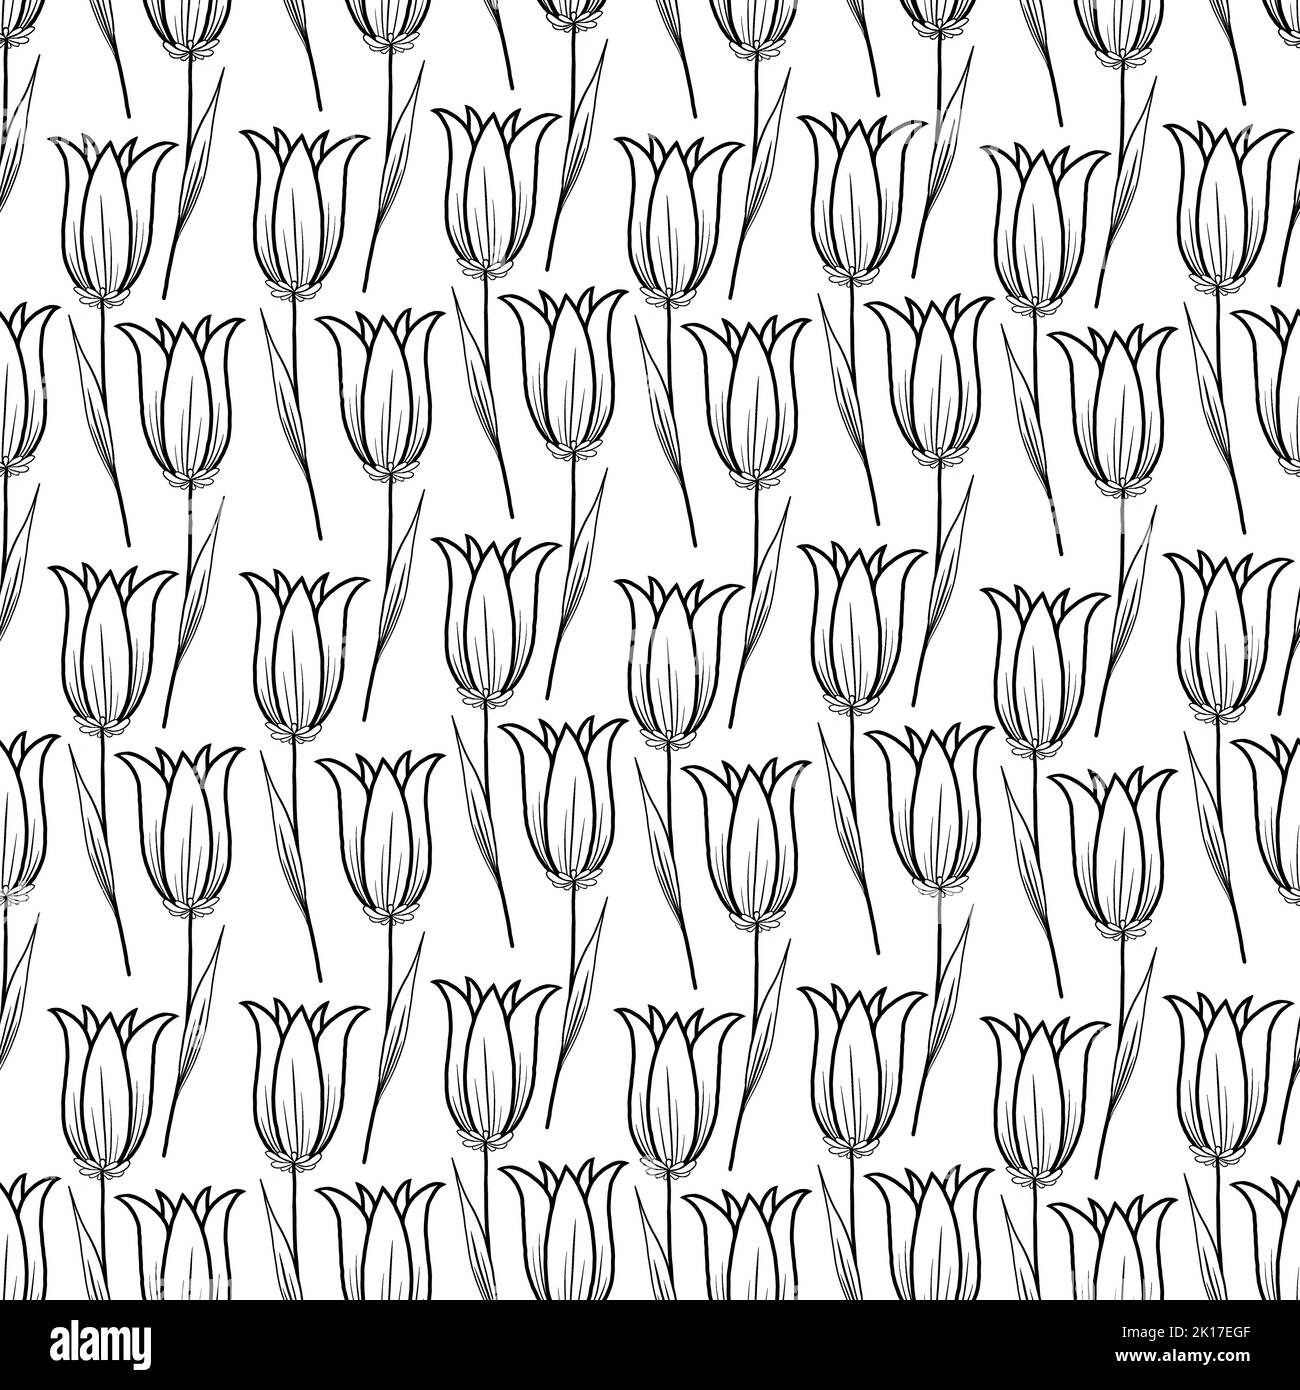 Tulipes à motif floral sur fond blanc. Illustration graphique en noir et blanc. Simple mise en plan d'une ligne. Banque D'Images